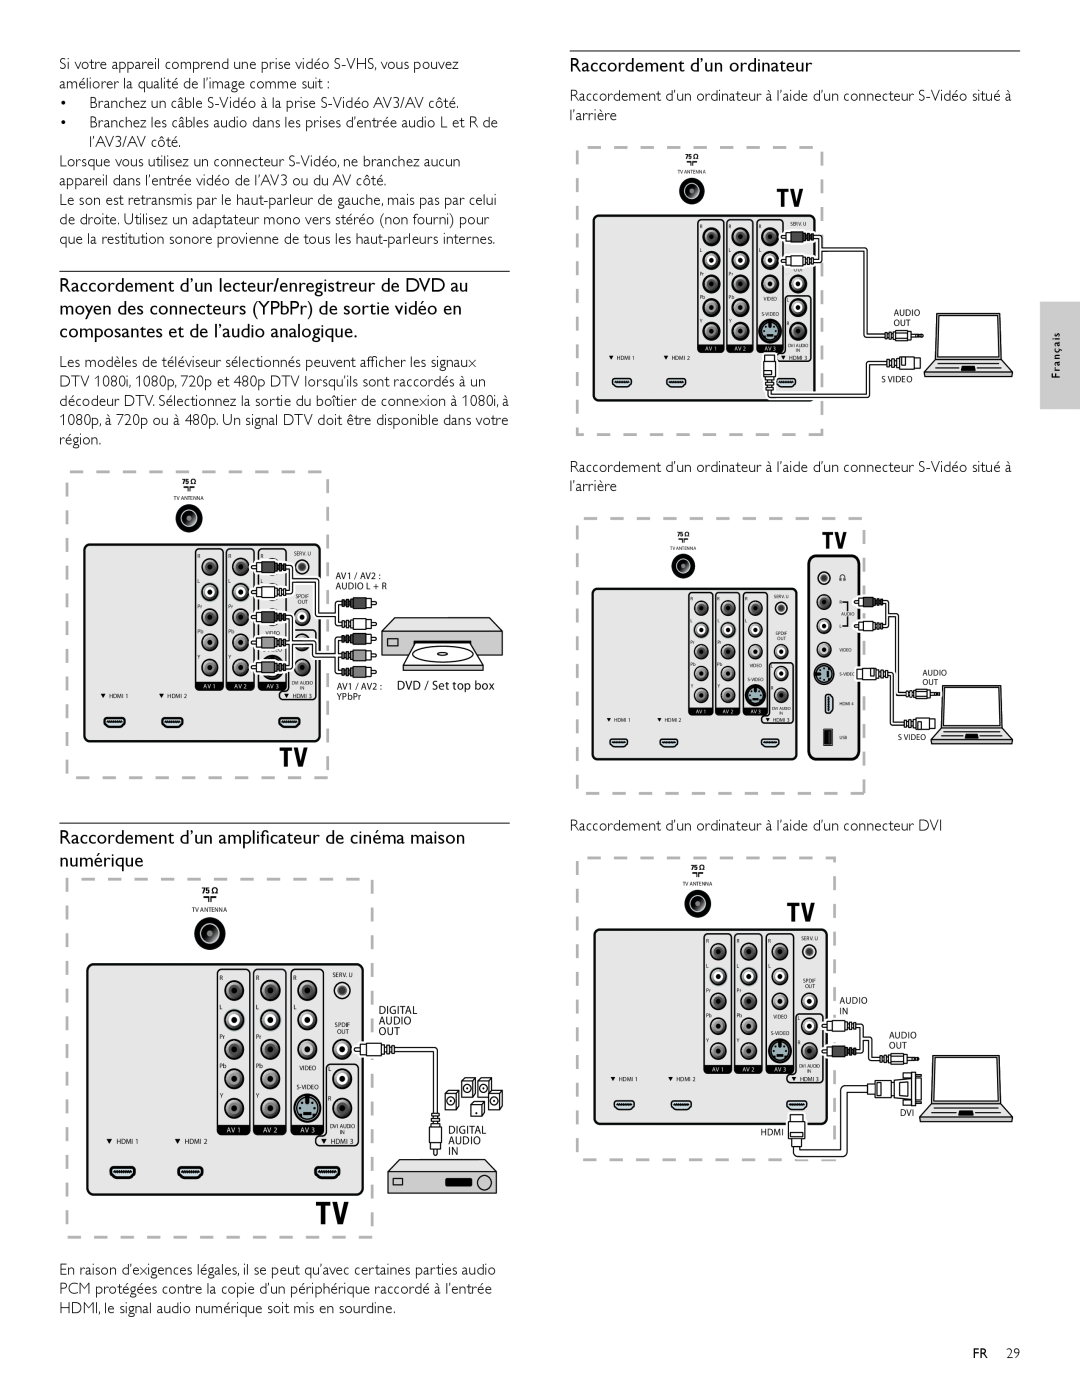 Magnavox 47MF439B user manual Raccordement d’un ordinateur, Raccordement d’un ampliﬁcateur de cinéma maison numérique 